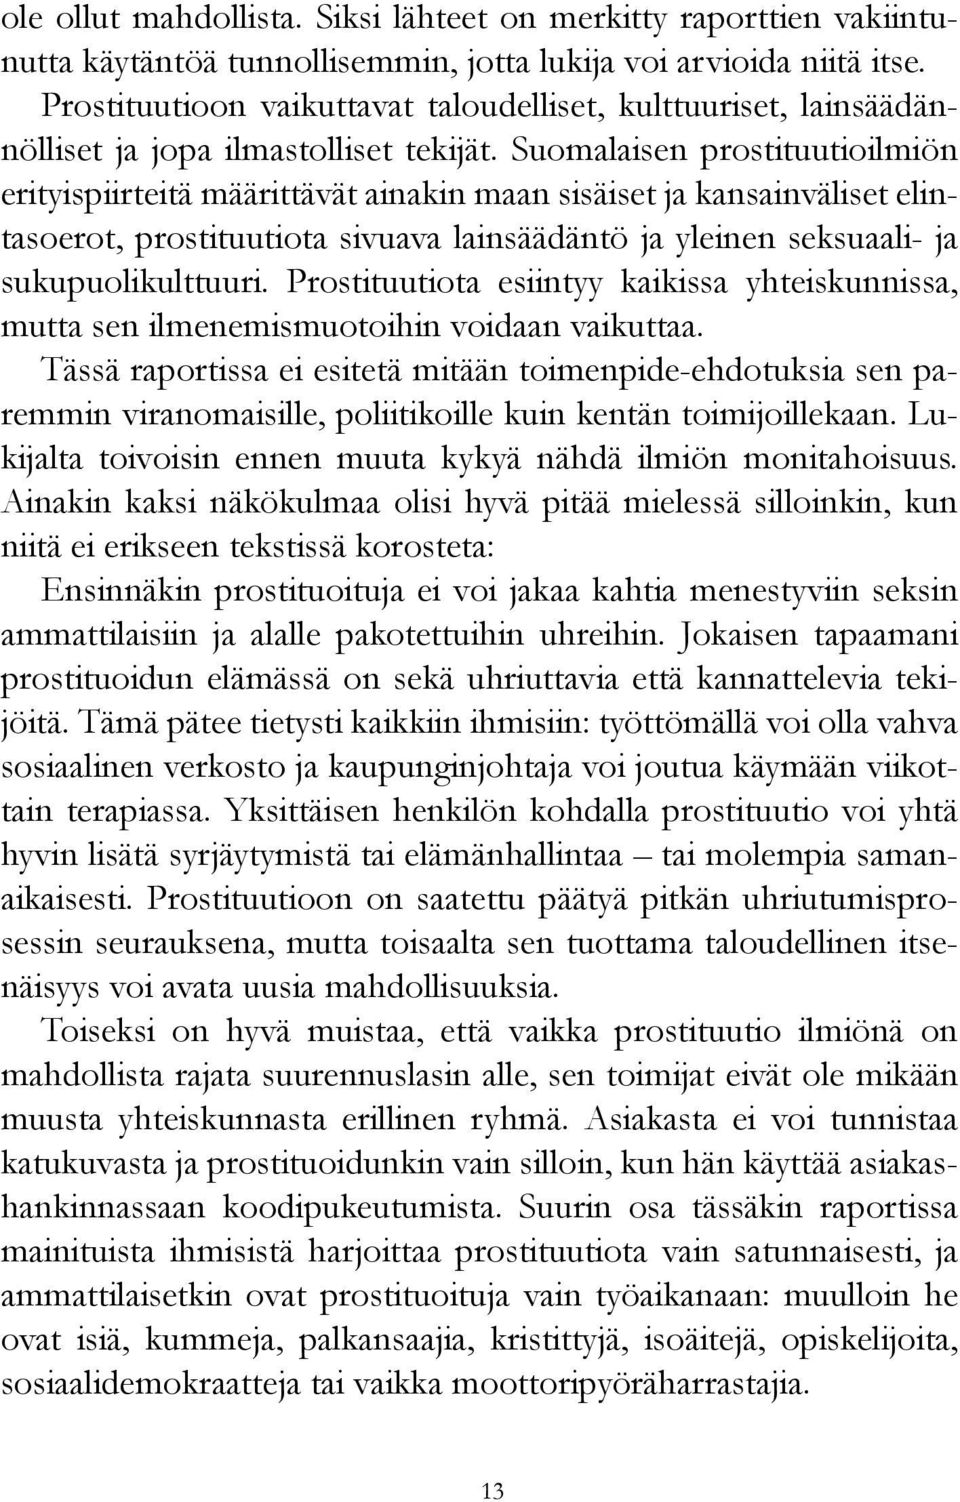 Suomalaisen prostituutioilmiön erityispiirteitä määrittävät ainakin maan sisäiset ja kansainväliset elintasoerot, prostituutiota sivuava lainsäädäntö ja yleinen seksuaali- ja sukupuolikulttuuri.